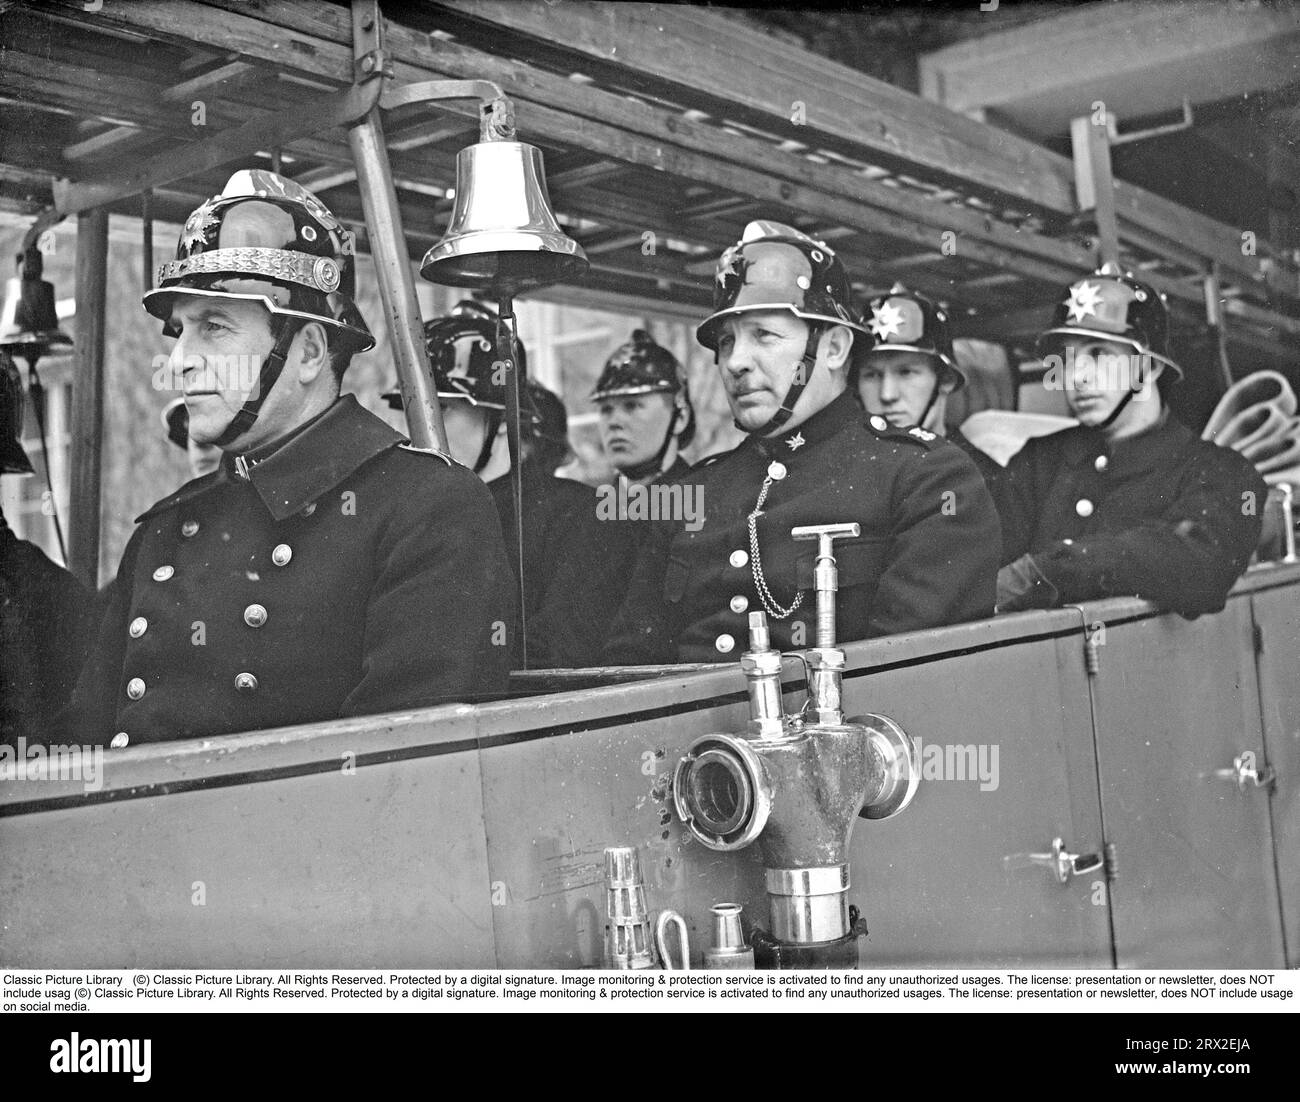 In den 1940er Jahren stürzen Feuerwehrleute der Kungsholmen-Feuerwehr in Stockholm in ihren offenen Feuerwehrauto. In Feueruniformen und Helmen mit Emblemen gekleidet, fahren sie aus der Feuerwache. Das Löschfahrzeug ist mit Leitern und einer Pumpenanlage ausgestattet. Eine Messingglocke ertönt während des Anrufs. Februar 1940. Kristoffersson, Ref. 57-3 Stockfoto